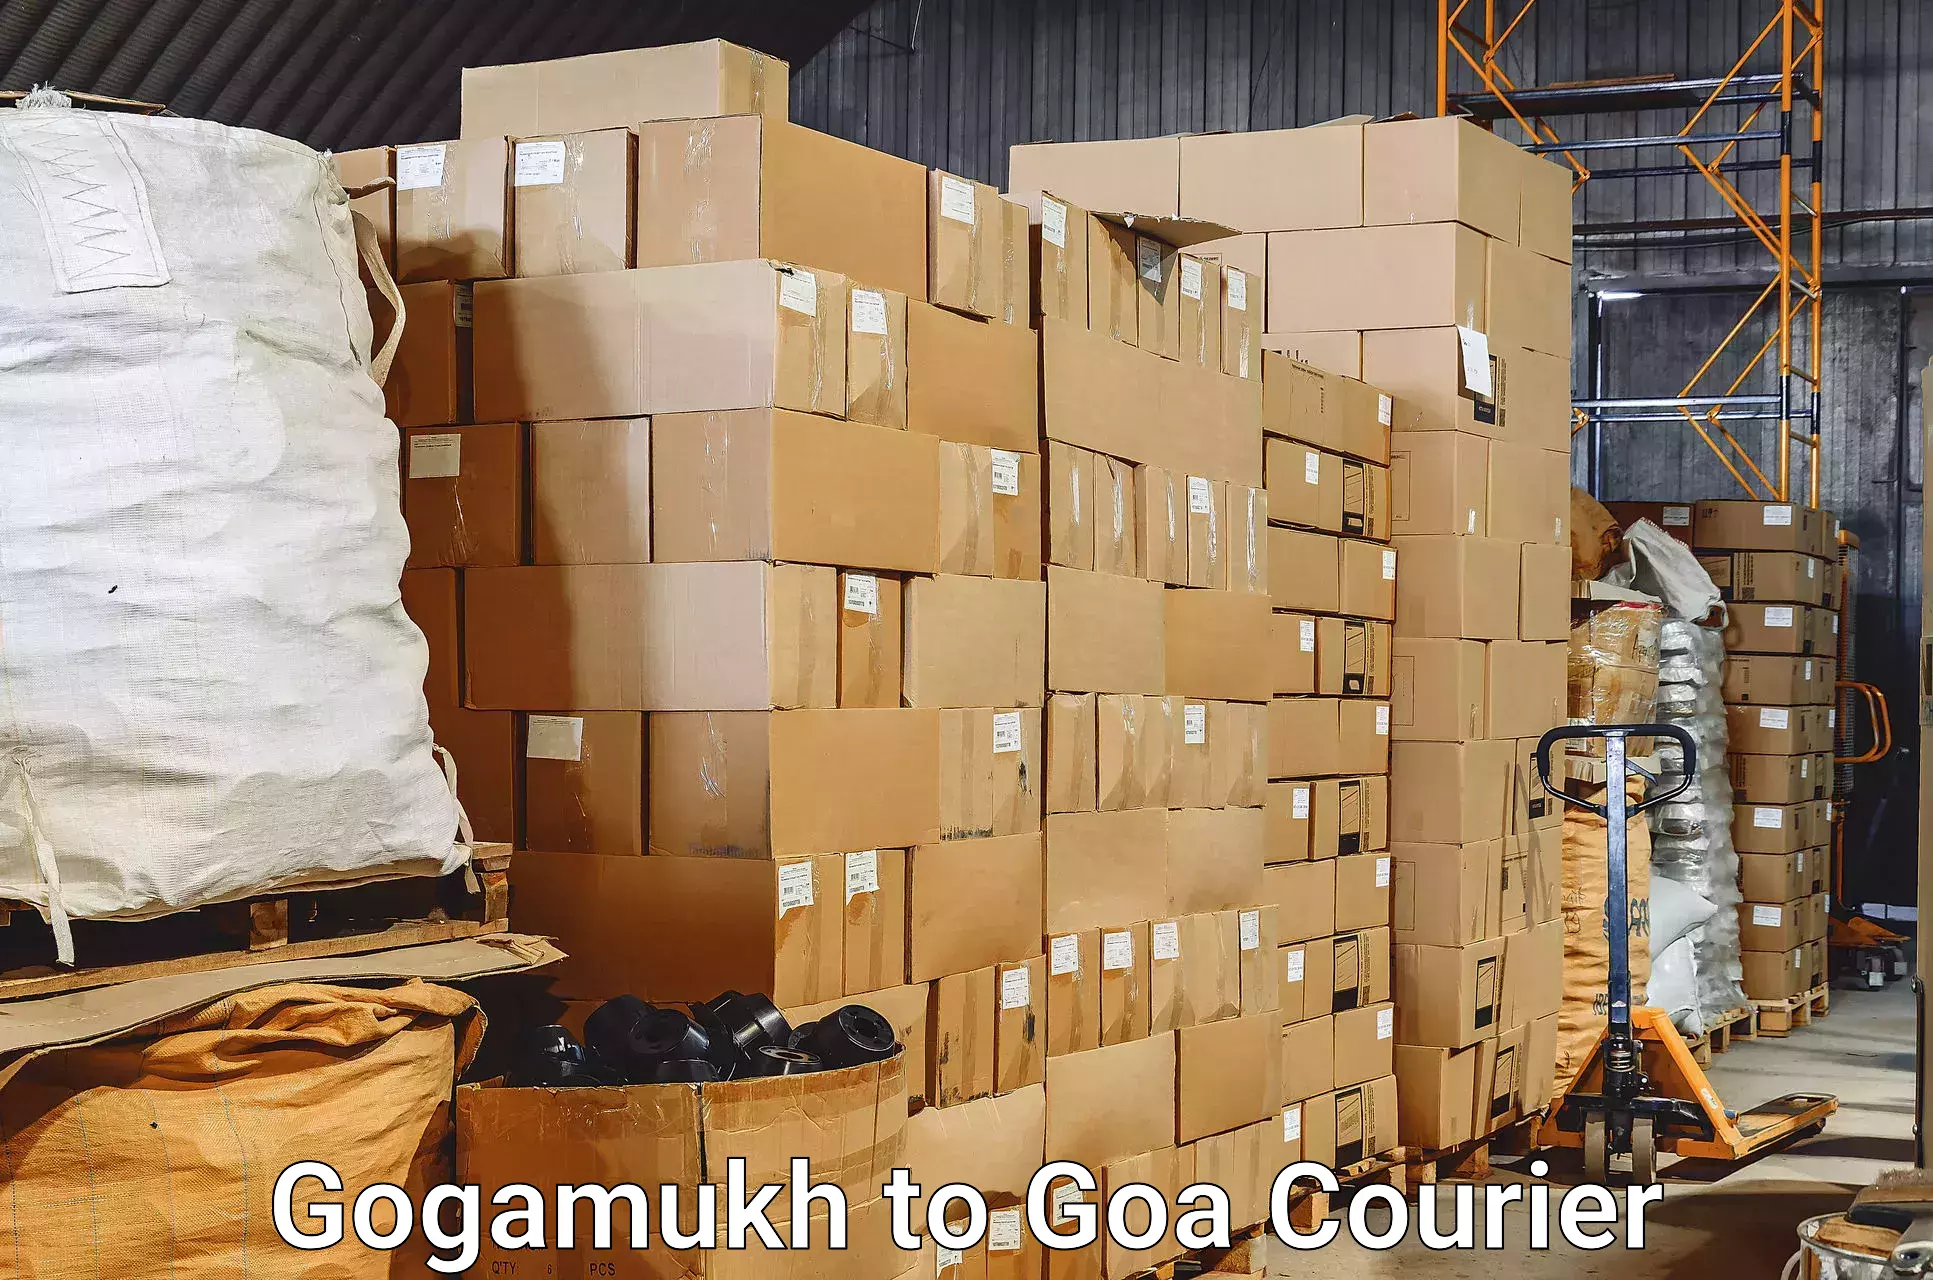 Luggage shipping service Gogamukh to Margao